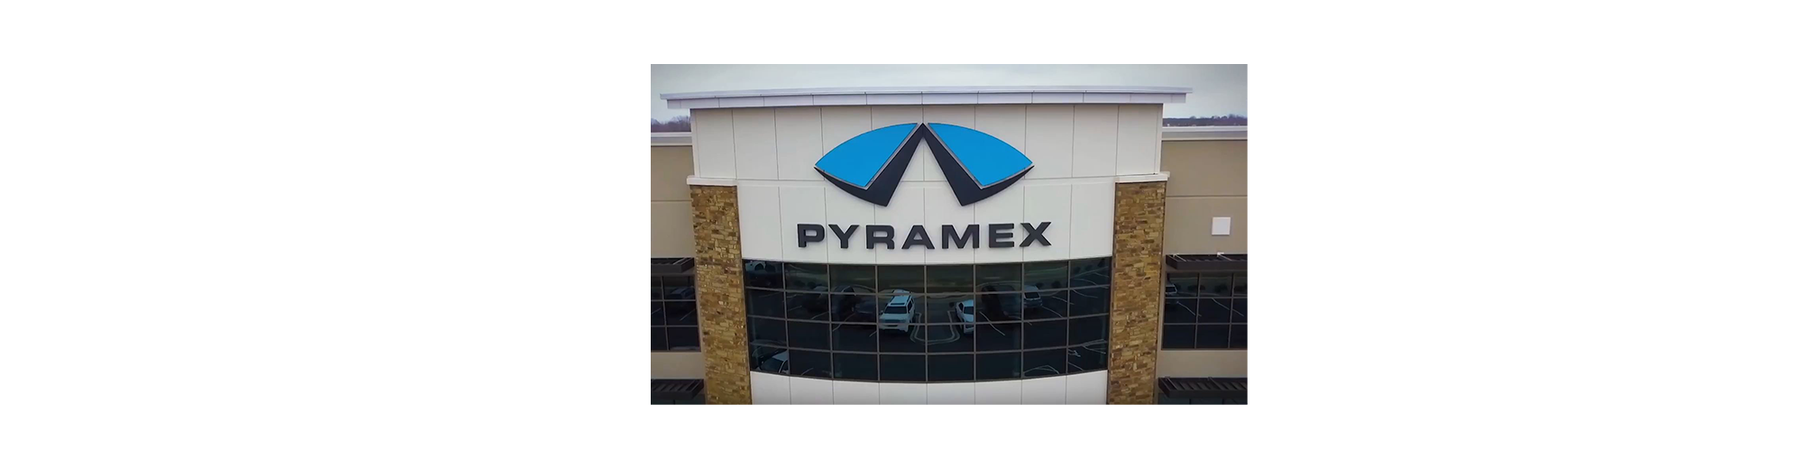 Introducing Pyramex Safety Gear!